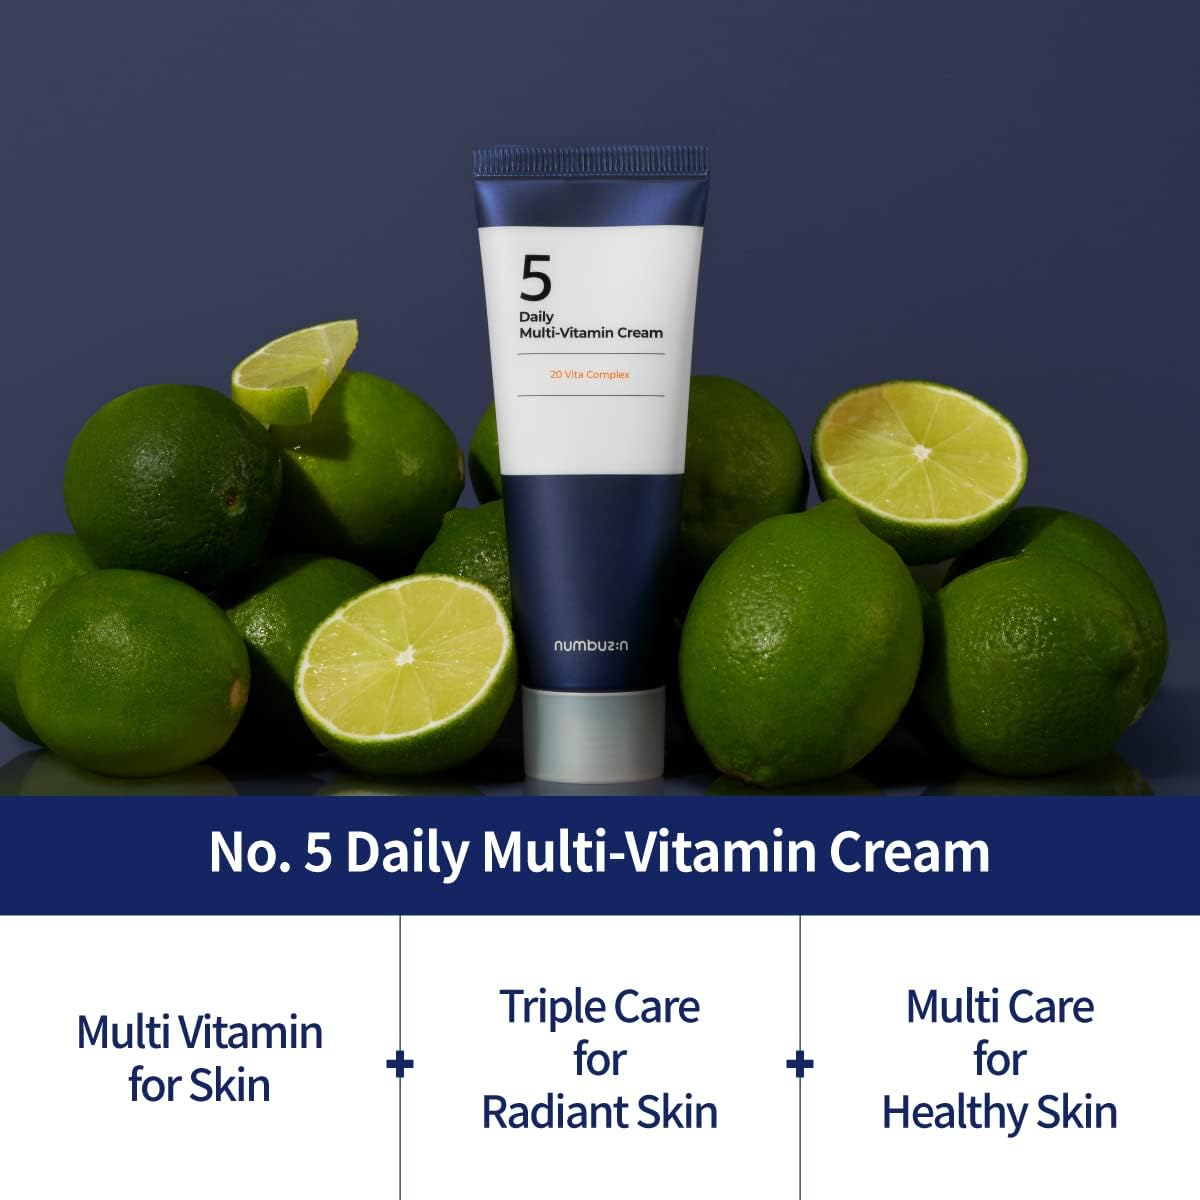 No.5 Daily Multi-Vitamin Cream